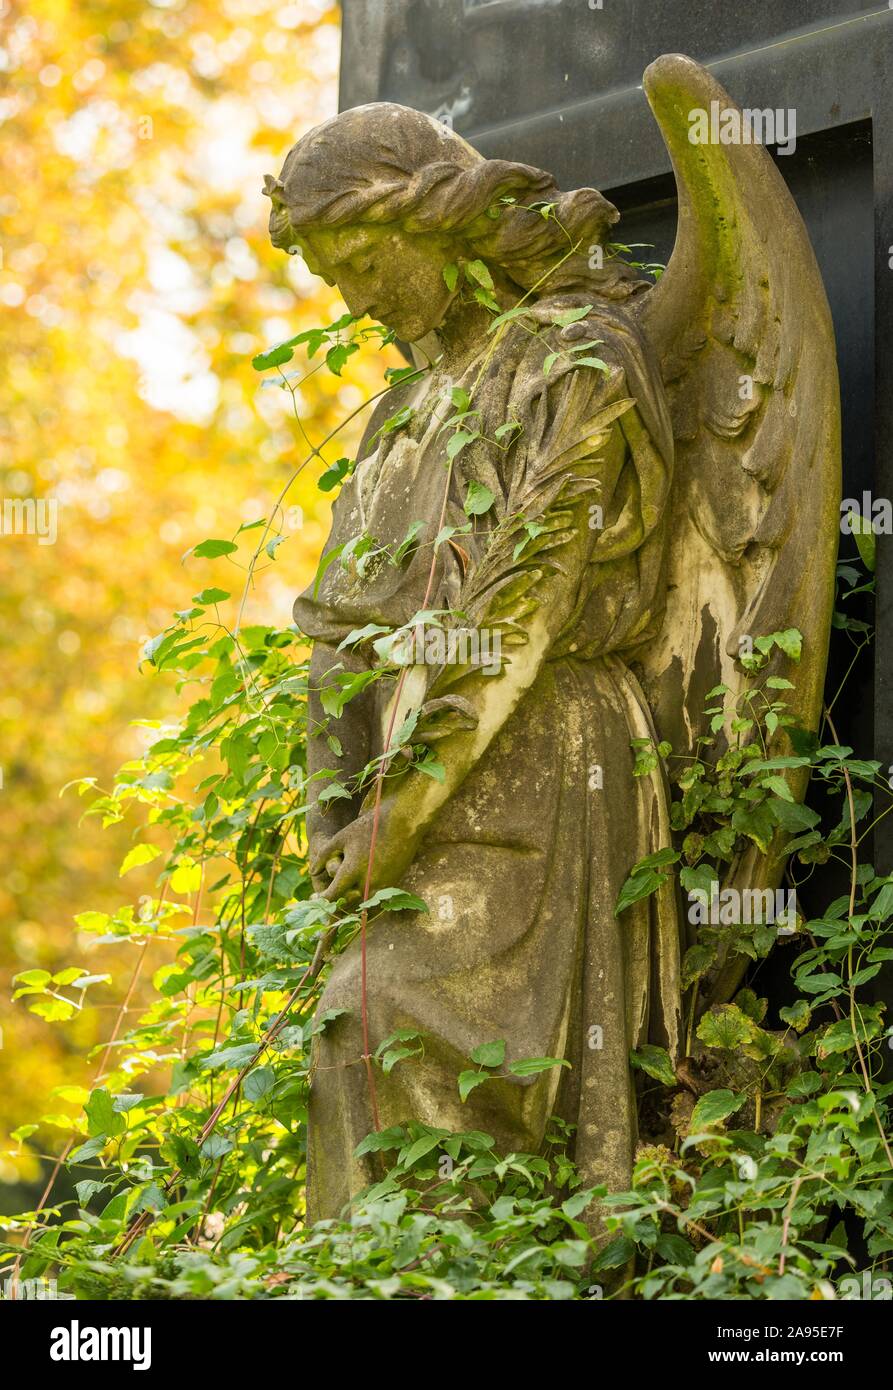 Femmina di figura di angelo, pregando, con stella sulla corona, intrecciano con piante rampicanti, autunno luce, tomba storico sul cimitero, Berlino-Kreuzberg Foto Stock